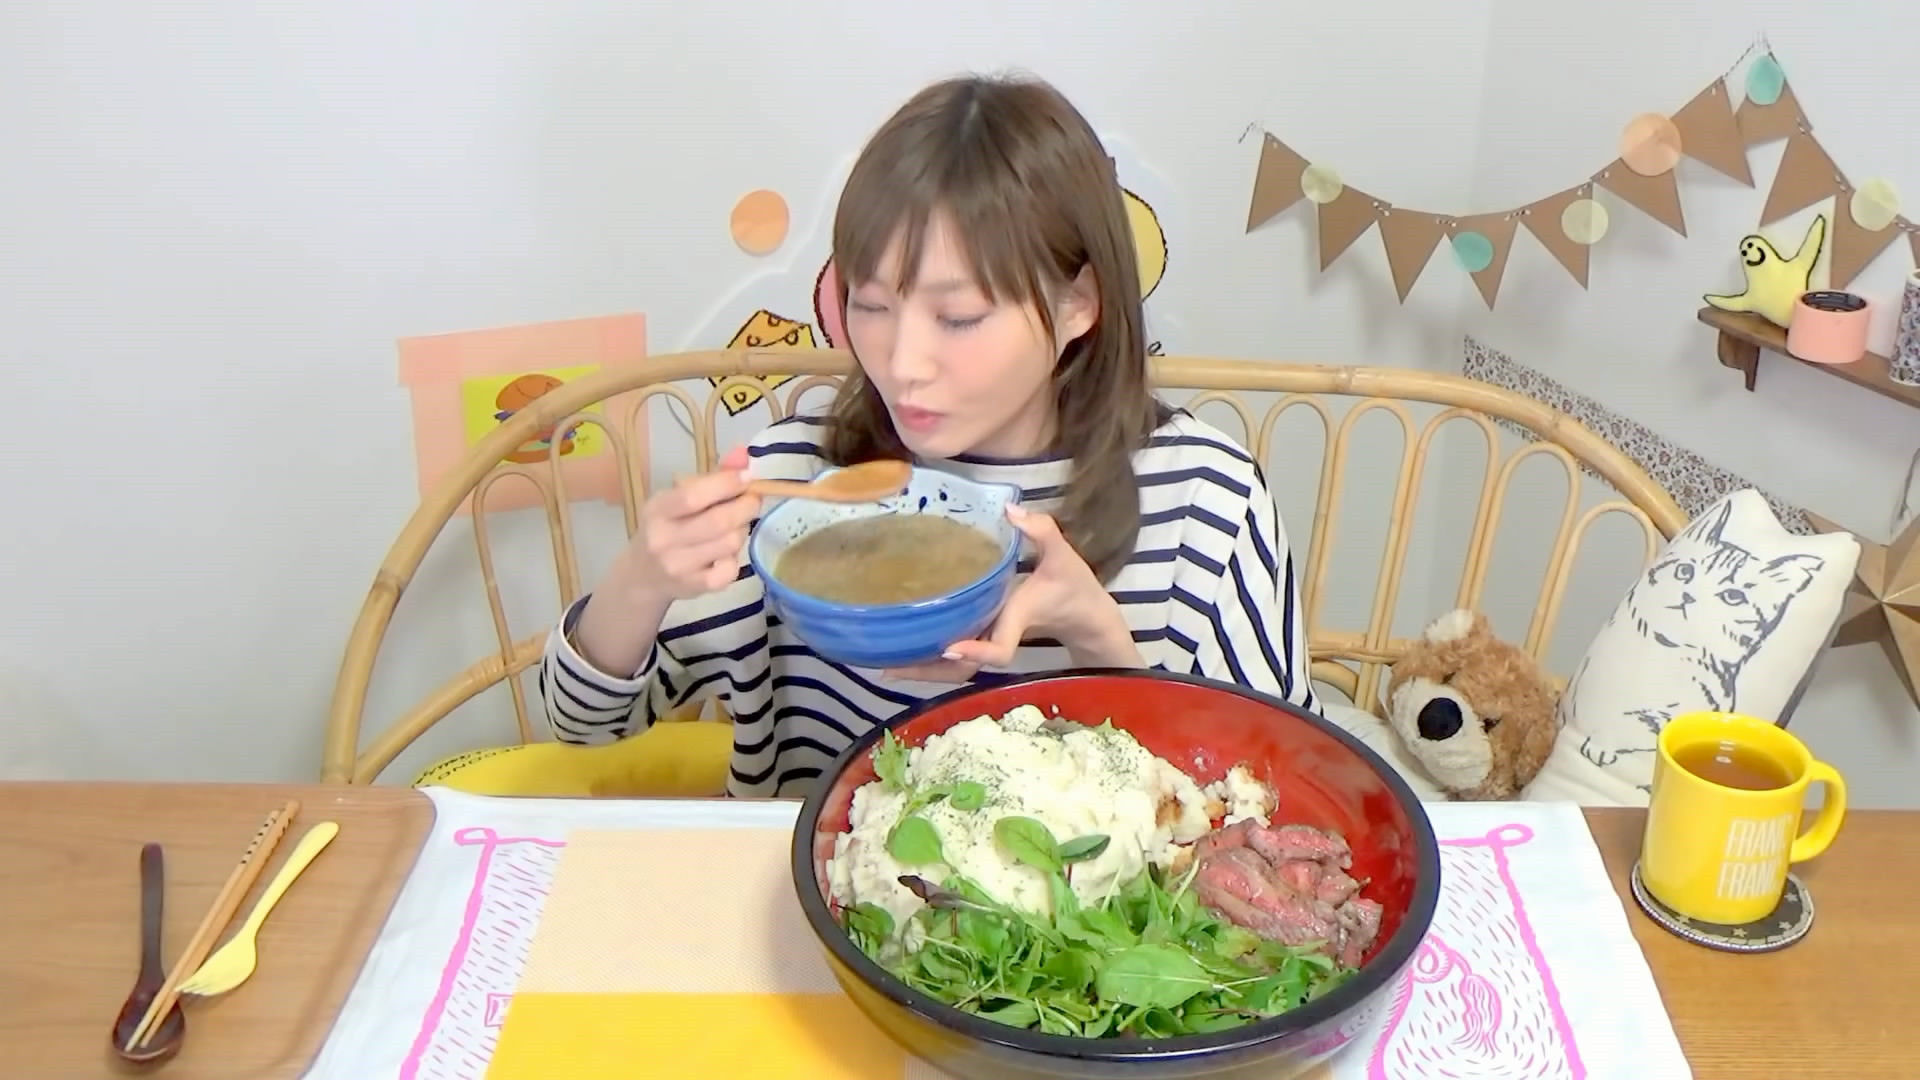 日本美女大胃王5分钟吃6斤土豆泥和牛肉,还不